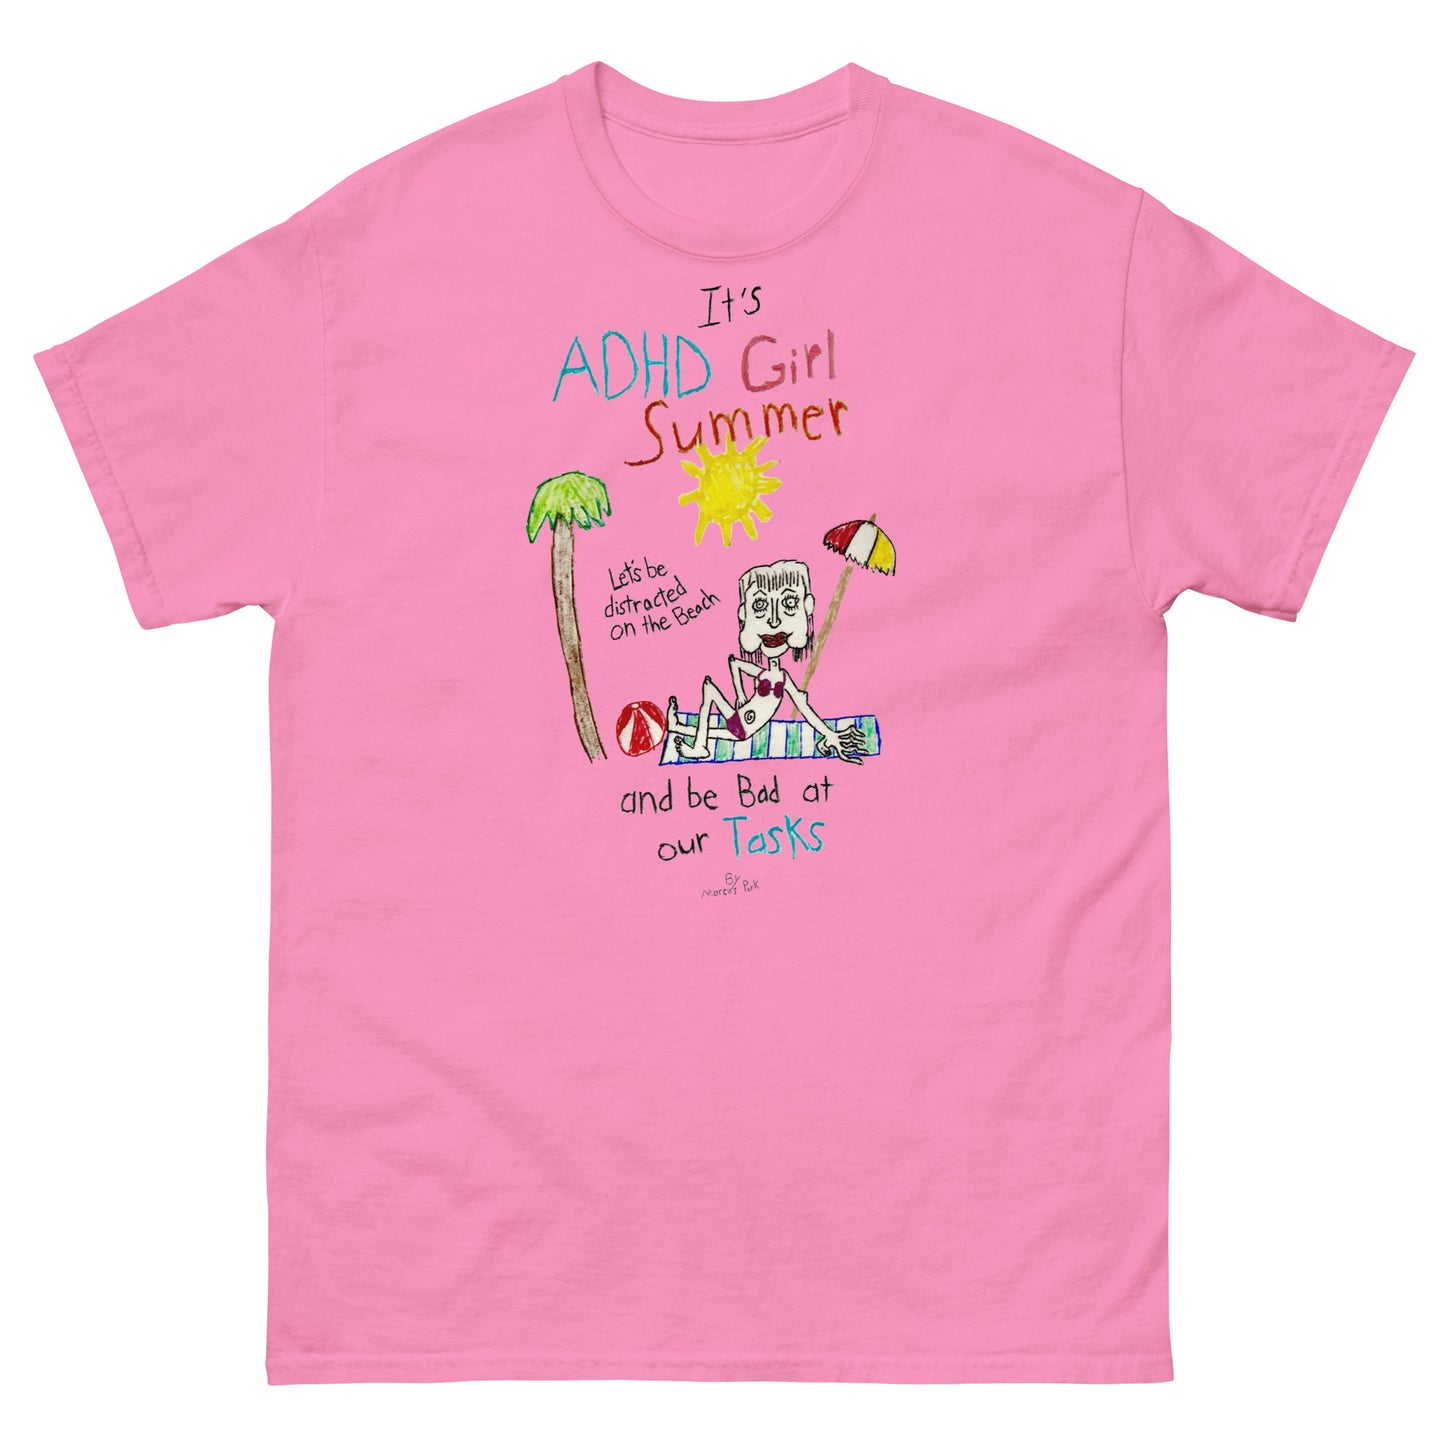 ADHD Girl Summer T-Shirt